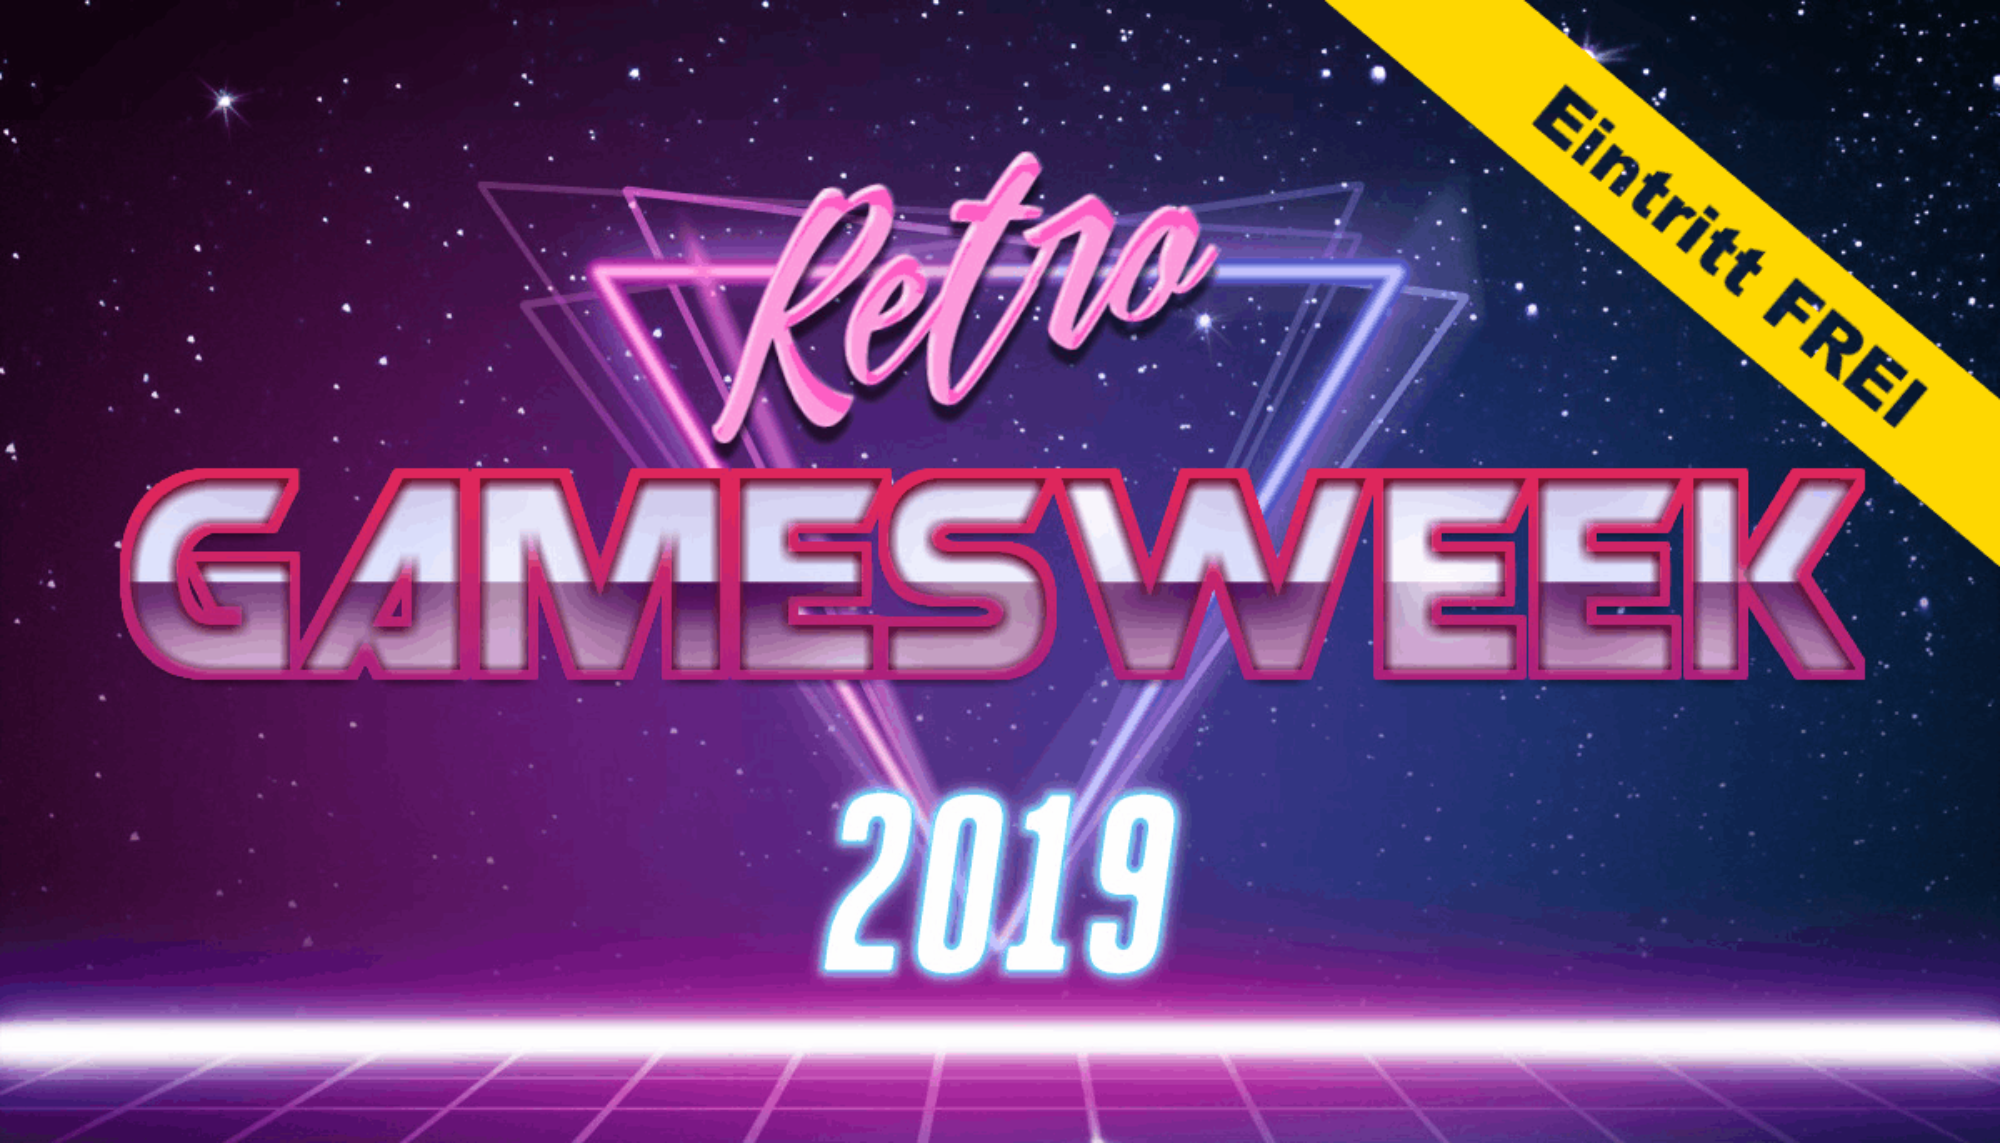 Retro Games Week 2019